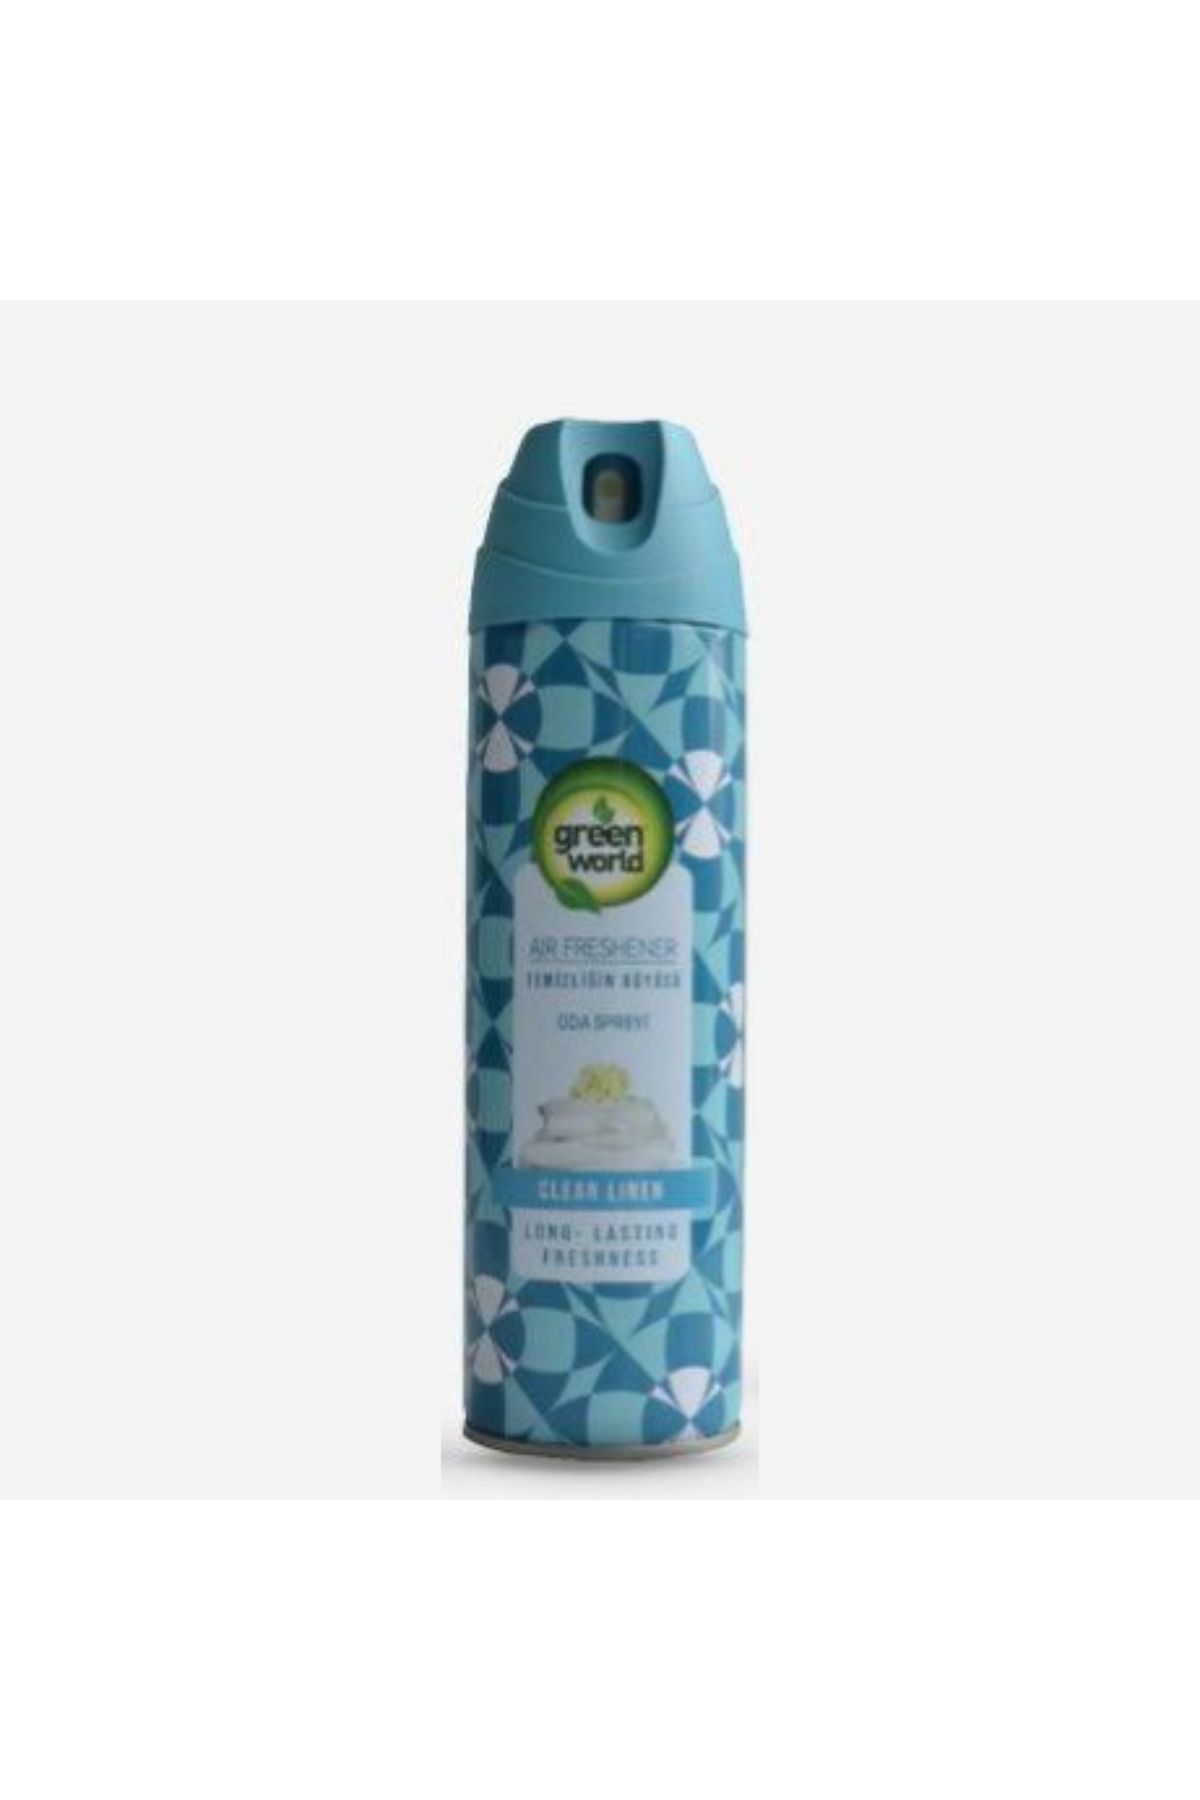 Green World Air Freshener 500 ml Temizliğin Büyüsü Oda Spreyi